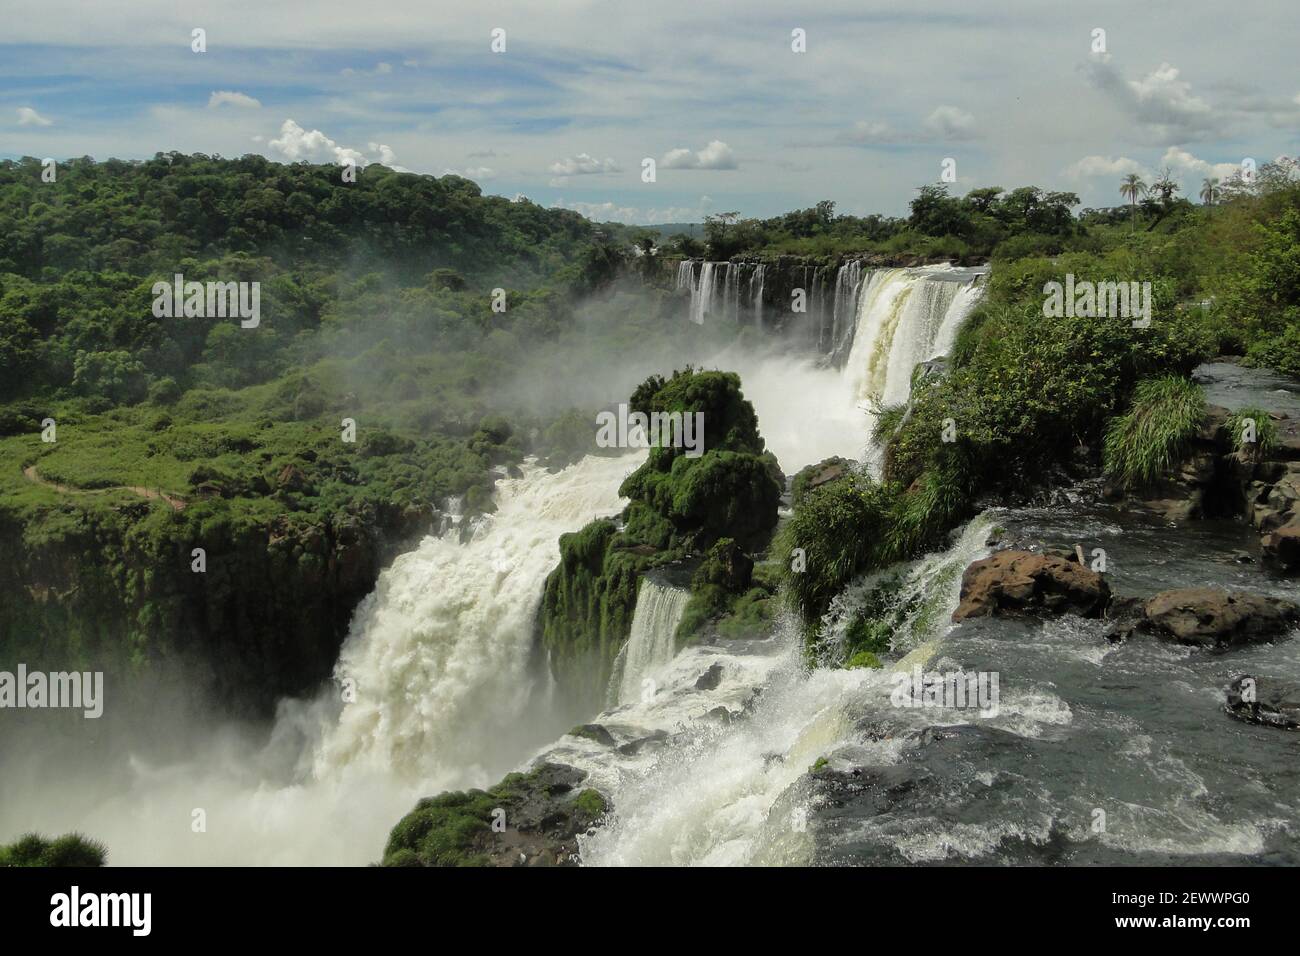 Cascate di Iguazu, una delle sette meraviglie naturali del mondo Foto Stock